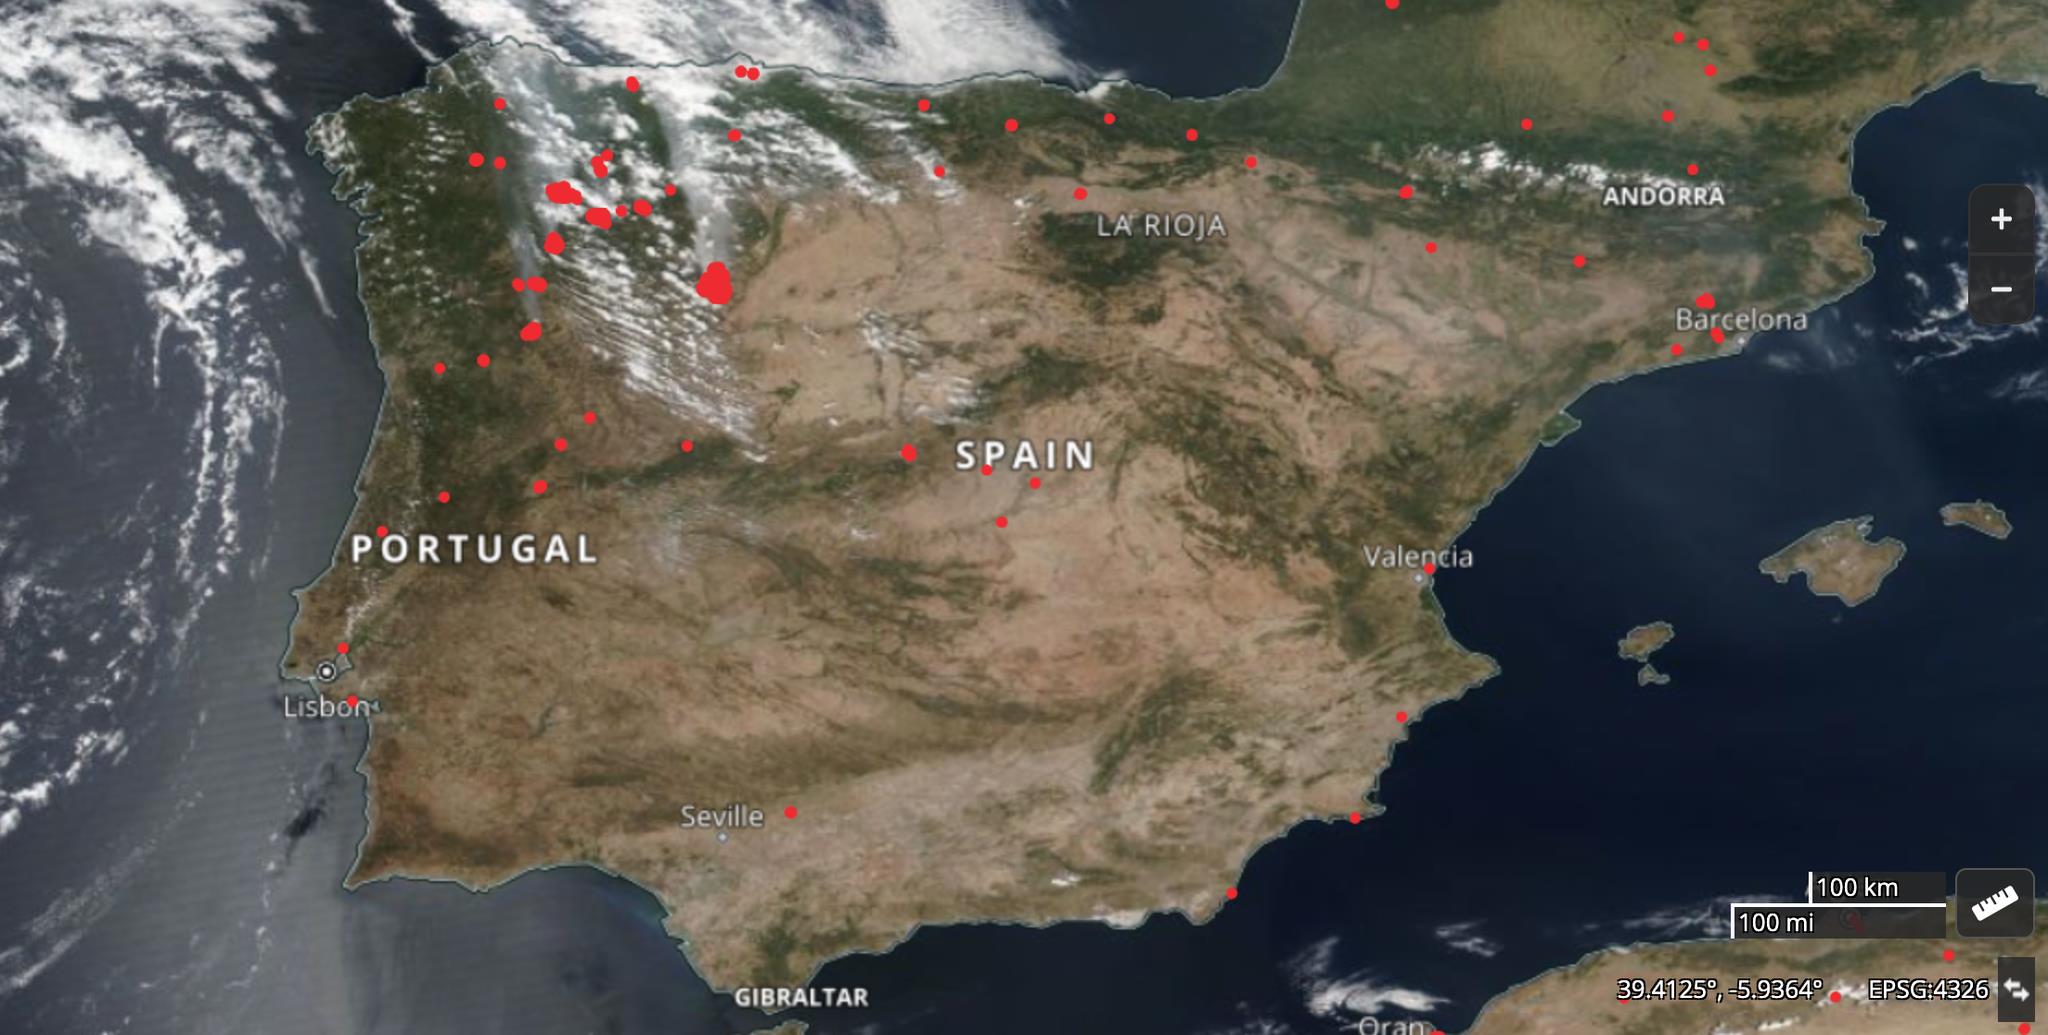 Este é o mapa dos incendiários detidos em Portugal - TVI Notícias